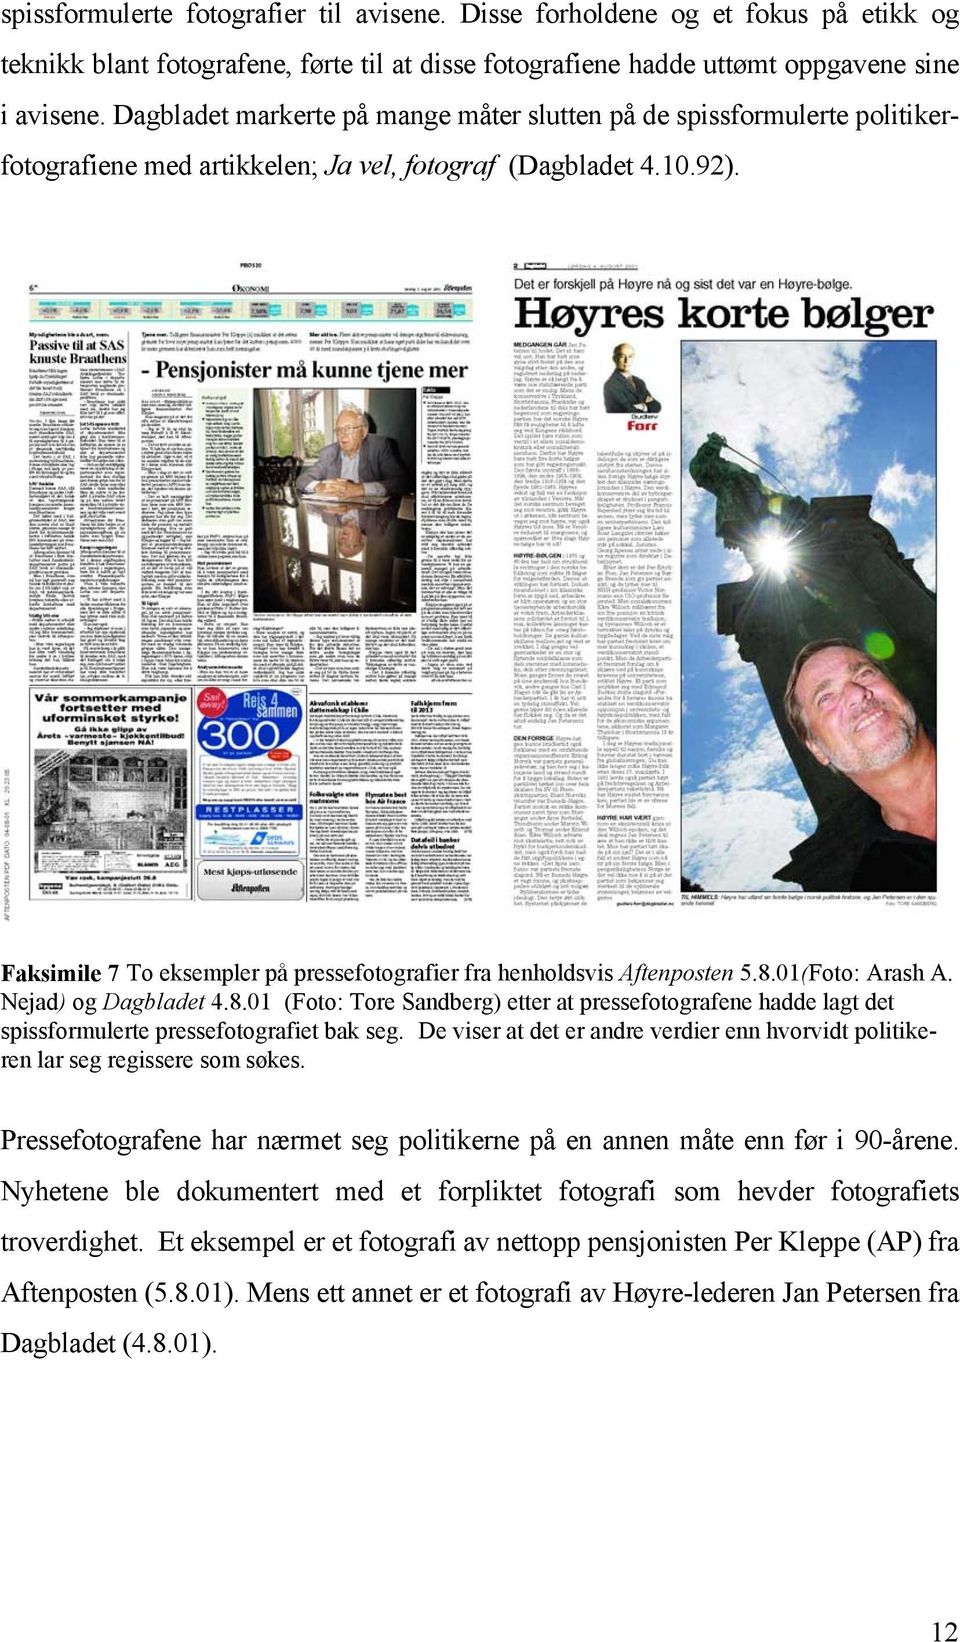 Faksimile 7 To eksempler på pressefotografier fra henholdsvis Aftenposten 5.8.01(Foto: Arash A. Nejad) og Dagbladet 4.8.01 (Foto: Tore Sandberg) etter at pressefotografene hadde lagt det spissformulerte pressefotografiet bak seg.